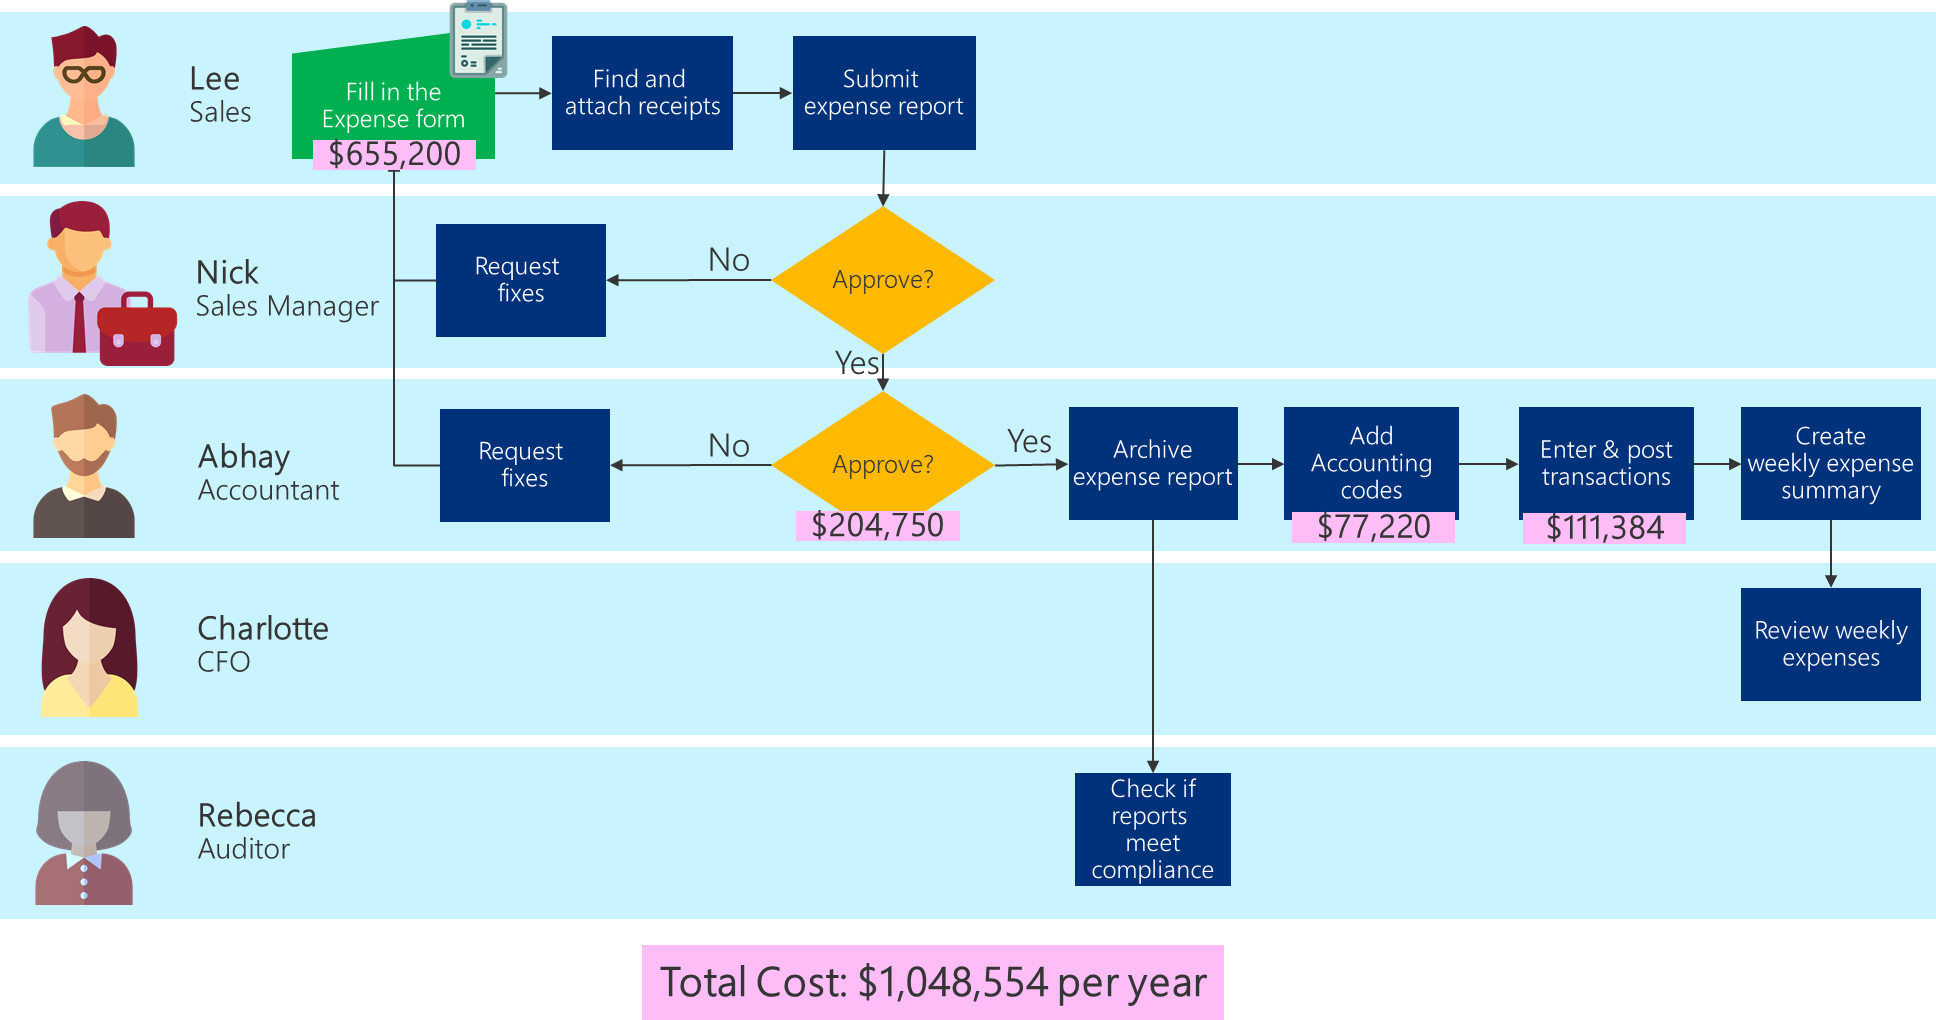 Liiketoimintaprosessin vuokaavio, jossa näkyvät kunkin tehtävän työntekijäkustannukset ja prosessin kokonaiskustannukset.